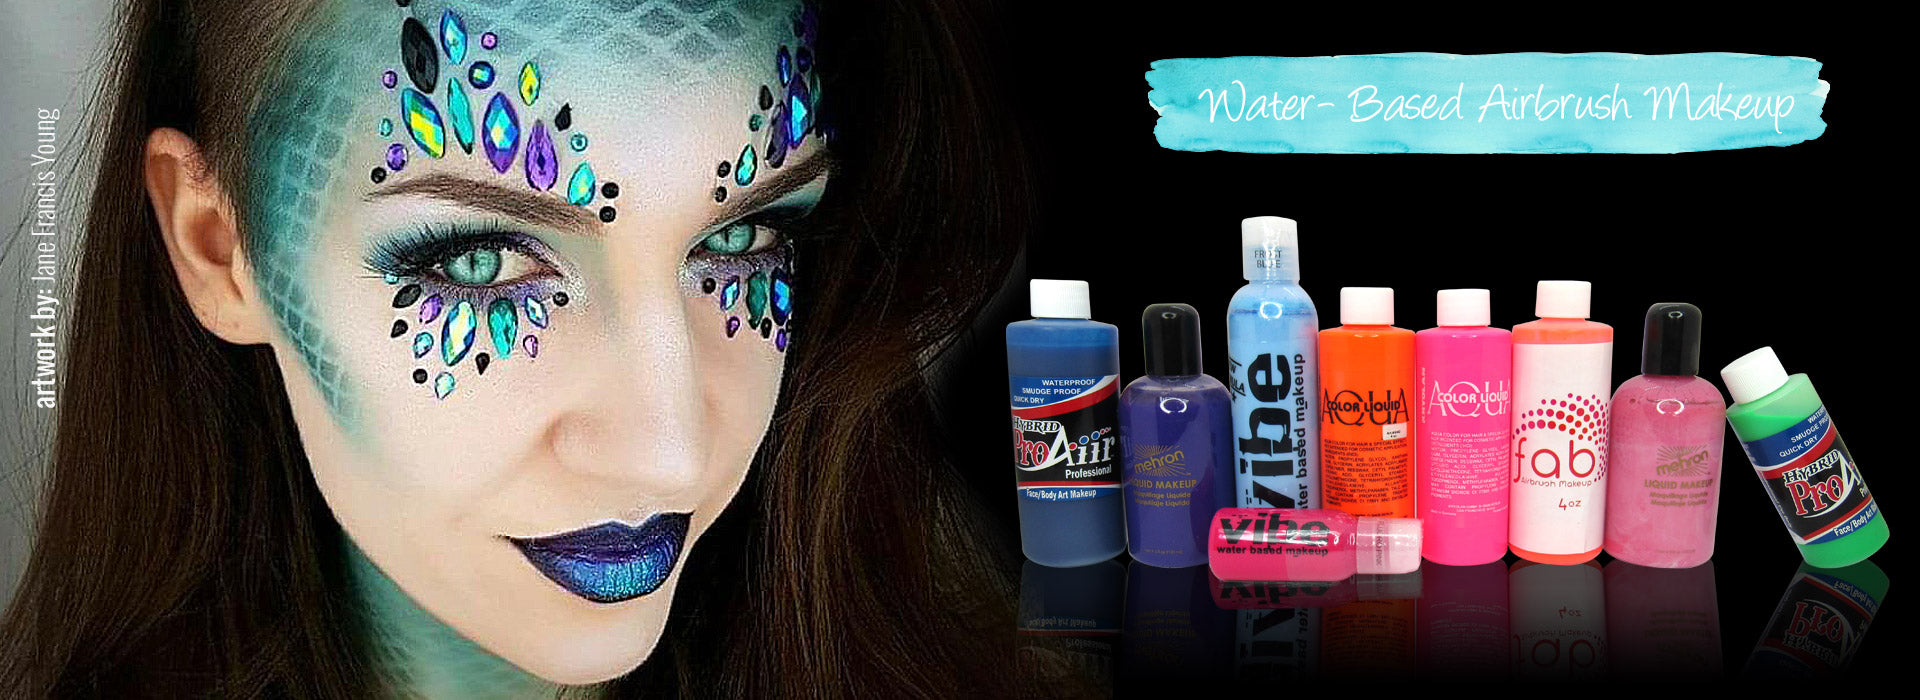 Water- Based Airbrush Makeup